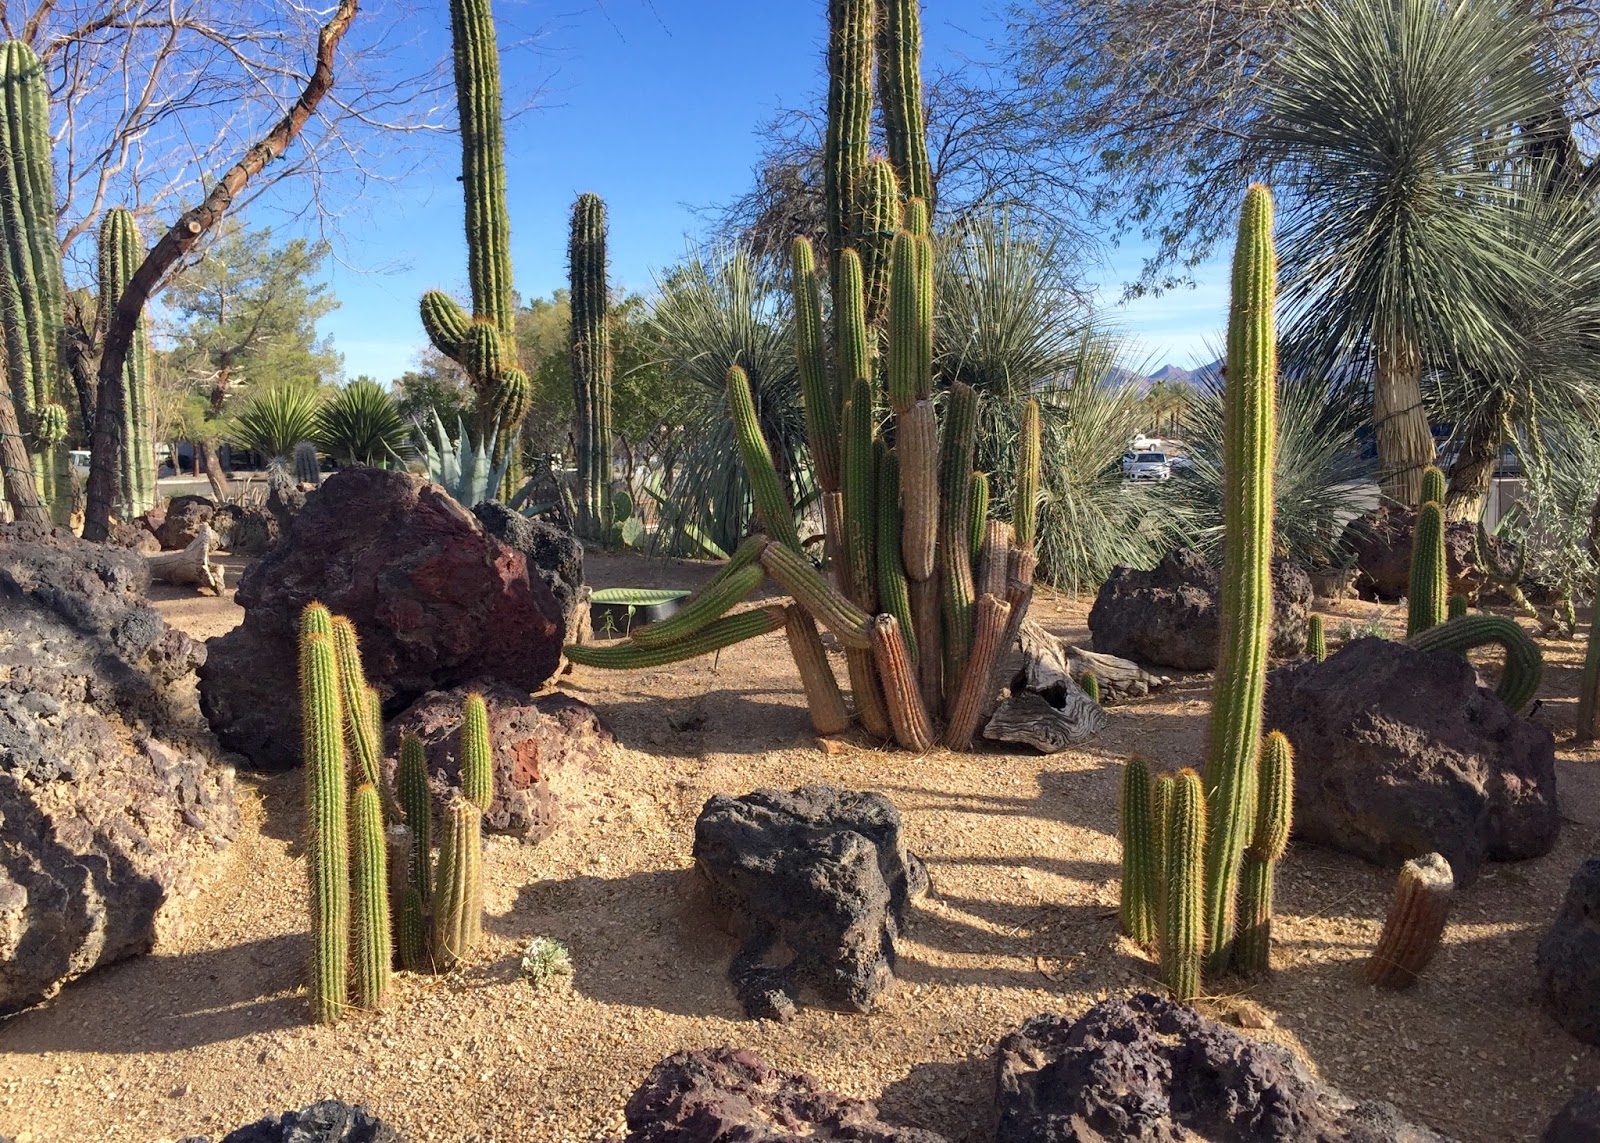 Red House Garden: The Ethel M. Chocolate Factory's Botanical Cactus Garden